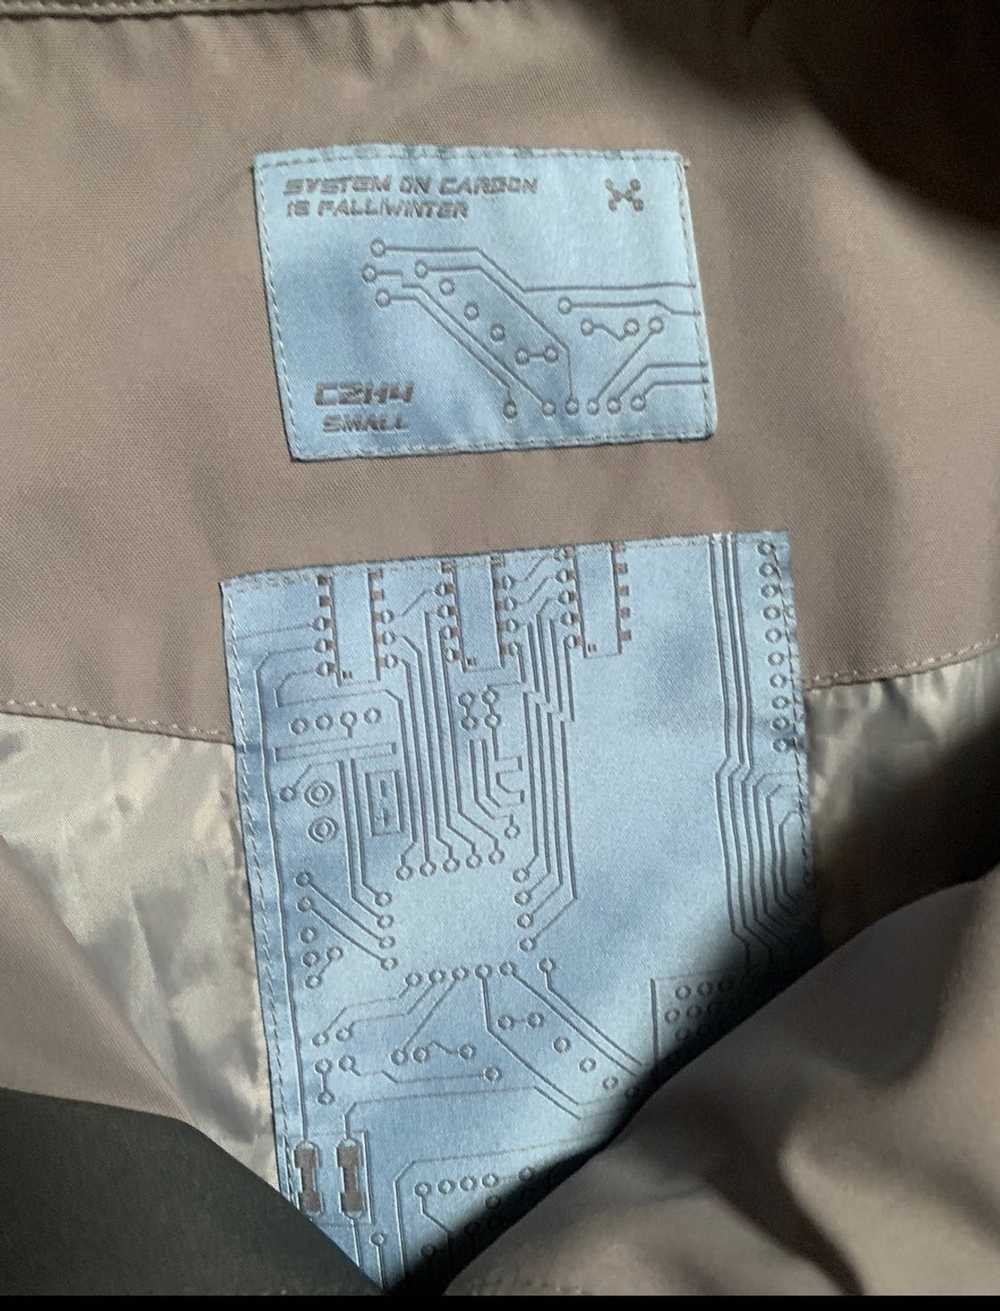 C2h4 C2H4 “system on carbon “ jacket - image 4